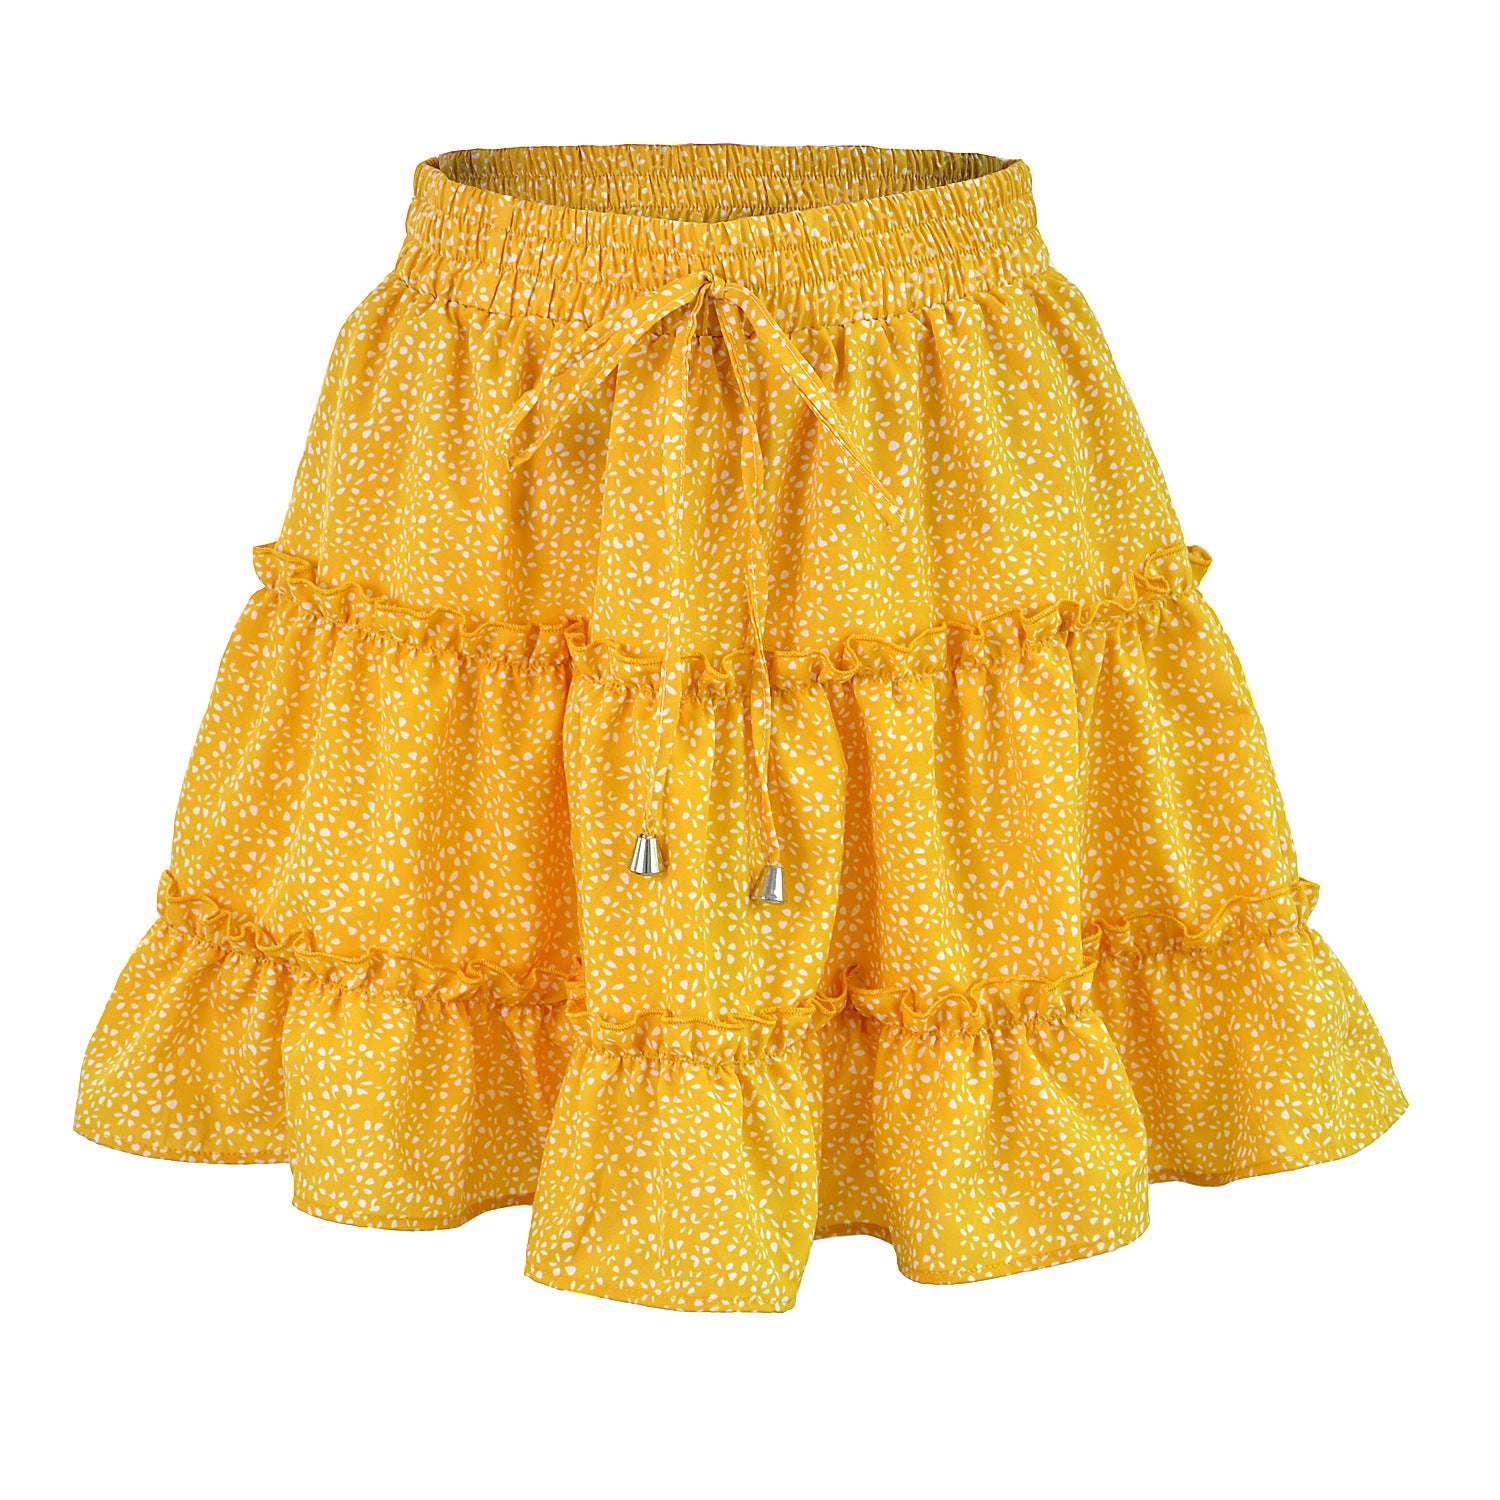 Women's Summer High Waist Ruffles Floral Printing Skirts